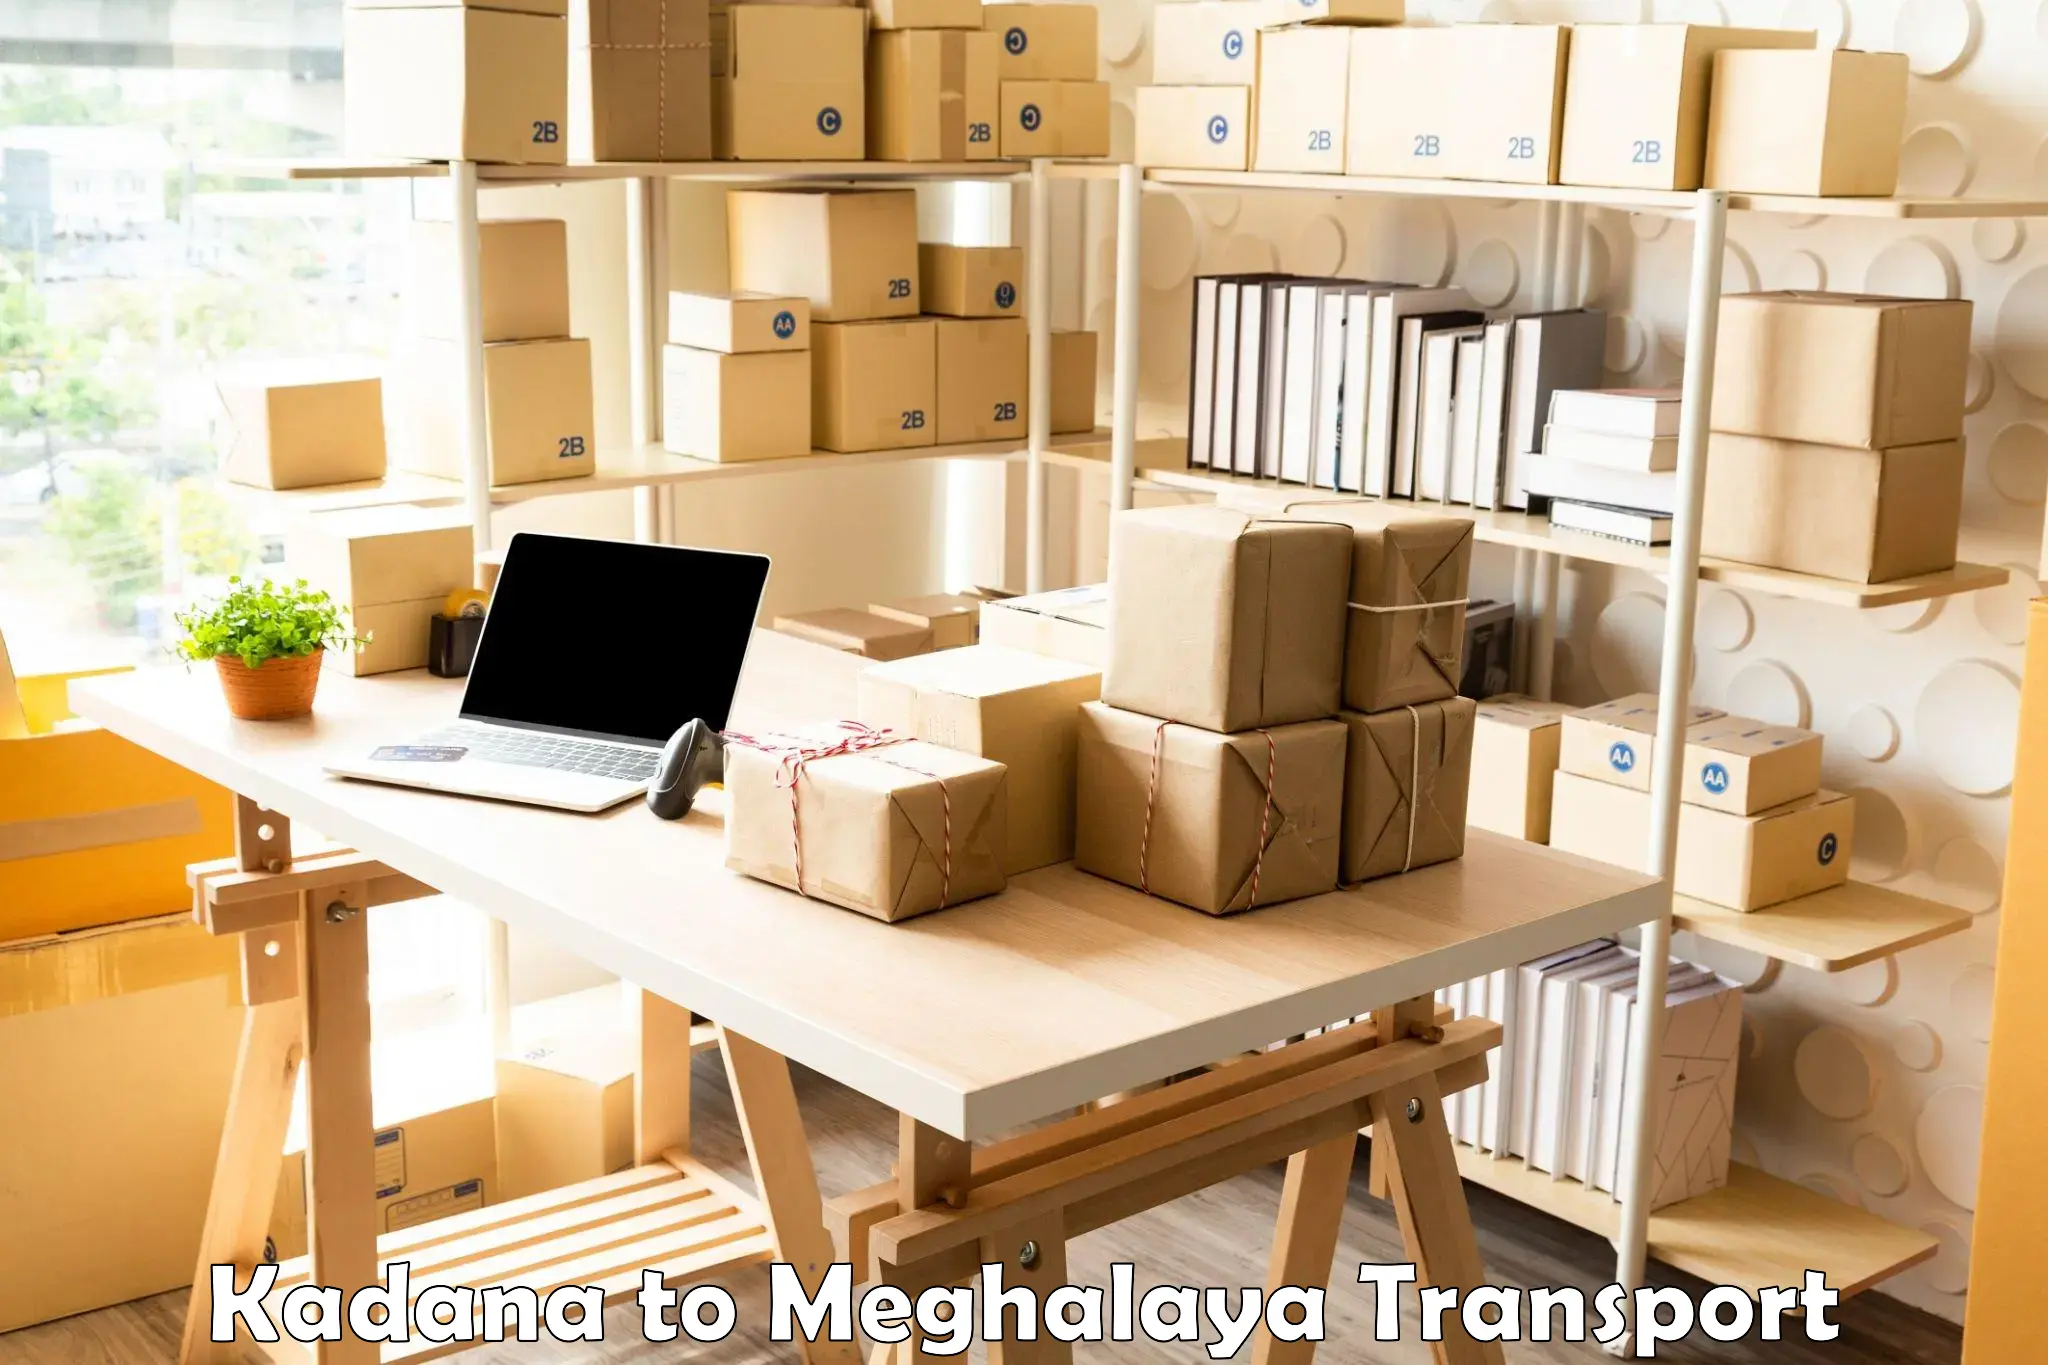 Daily parcel service transport Kadana to Meghalaya